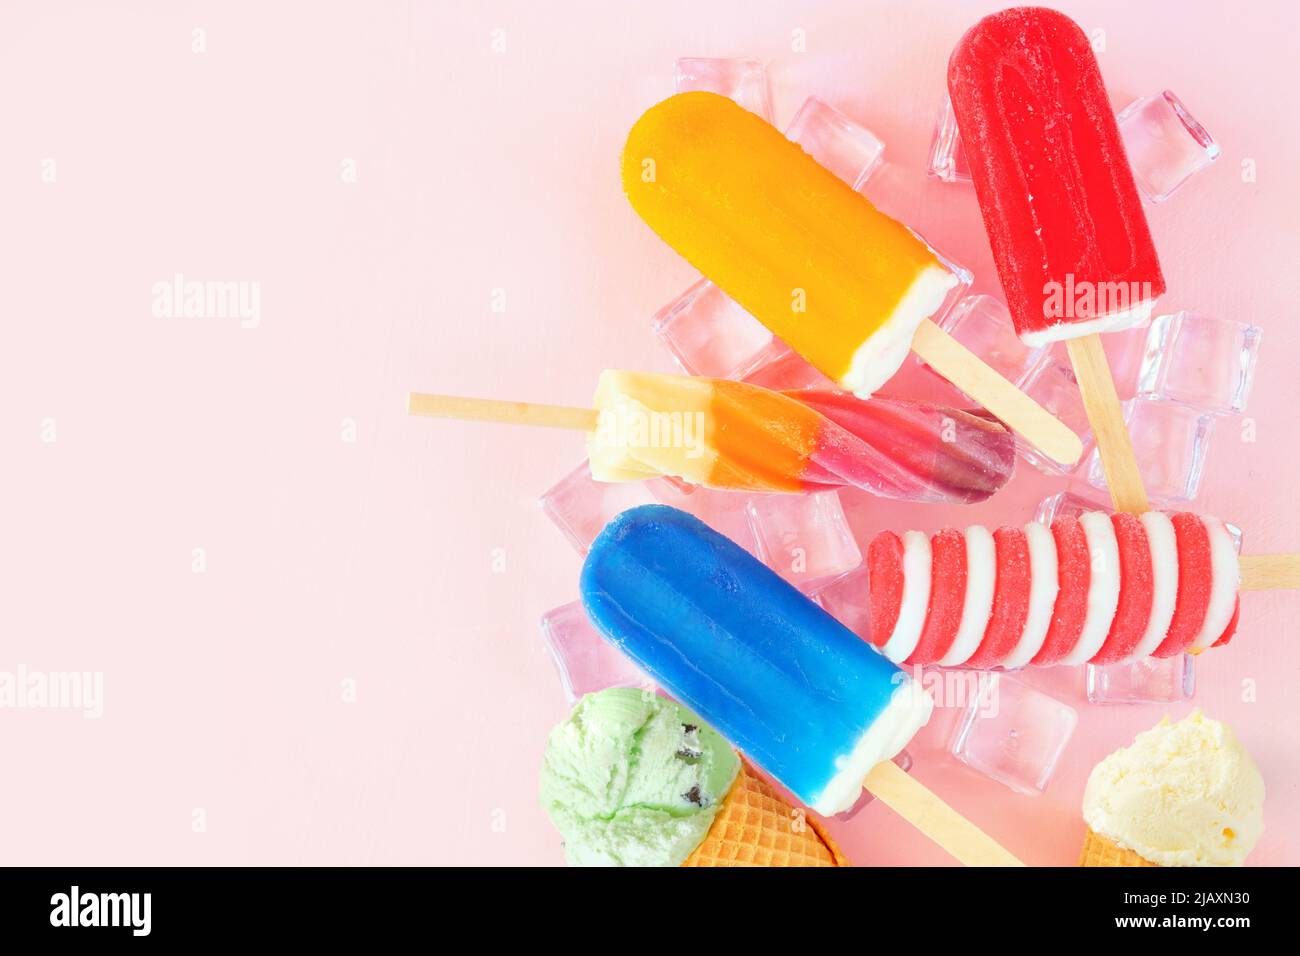 Auswahl an farbenfrohen Sommerpopsicles und Eiscreme-Leckereien. Oben auf einem rosa Hintergrund gestreut. Speicherplatz kopieren. Stockfoto